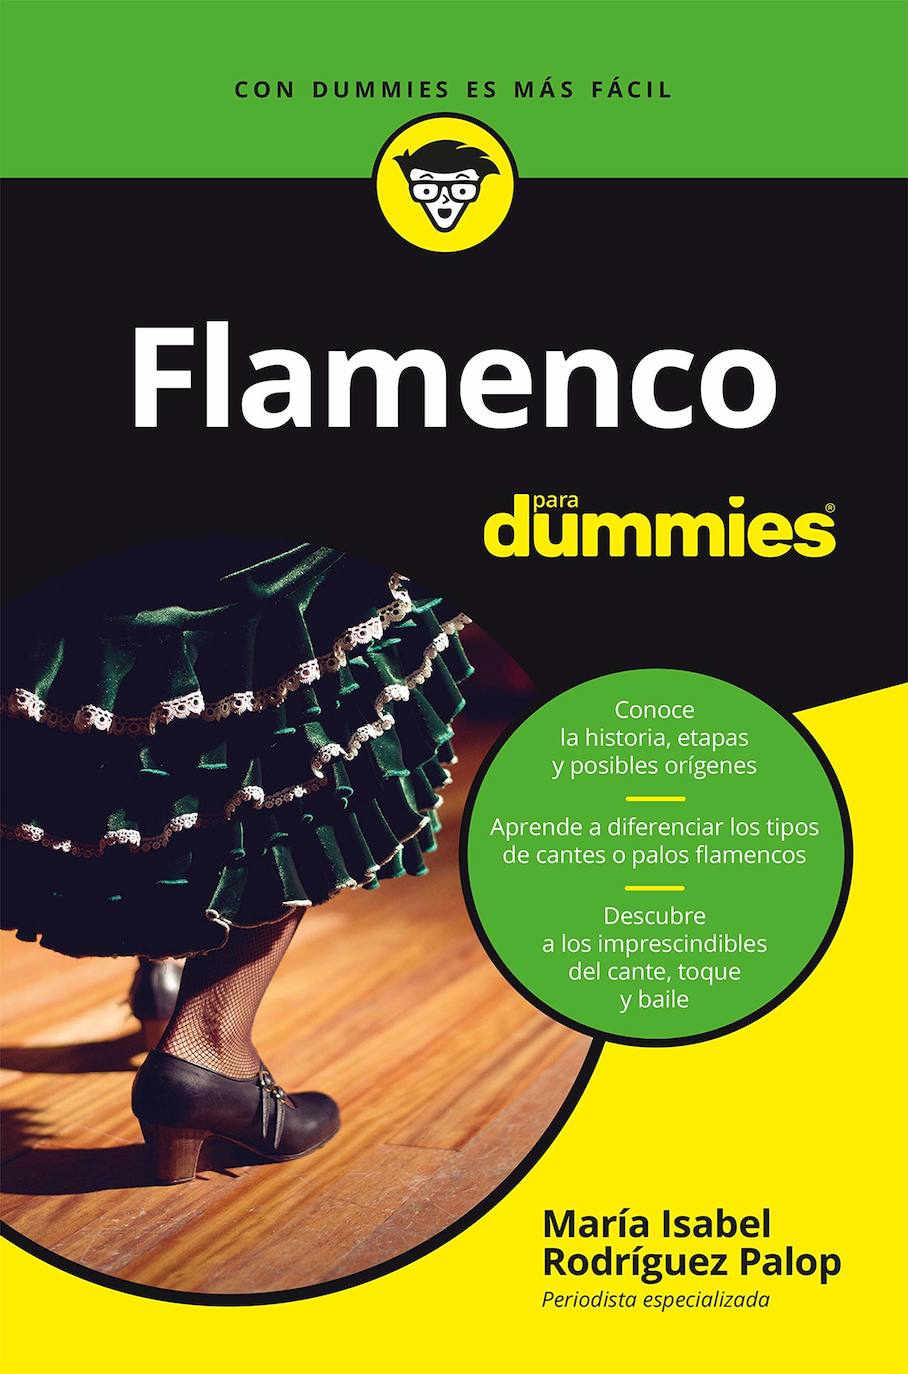 María Isabel Rodríguez presenta 'Flamenco para dummies', su primera obra